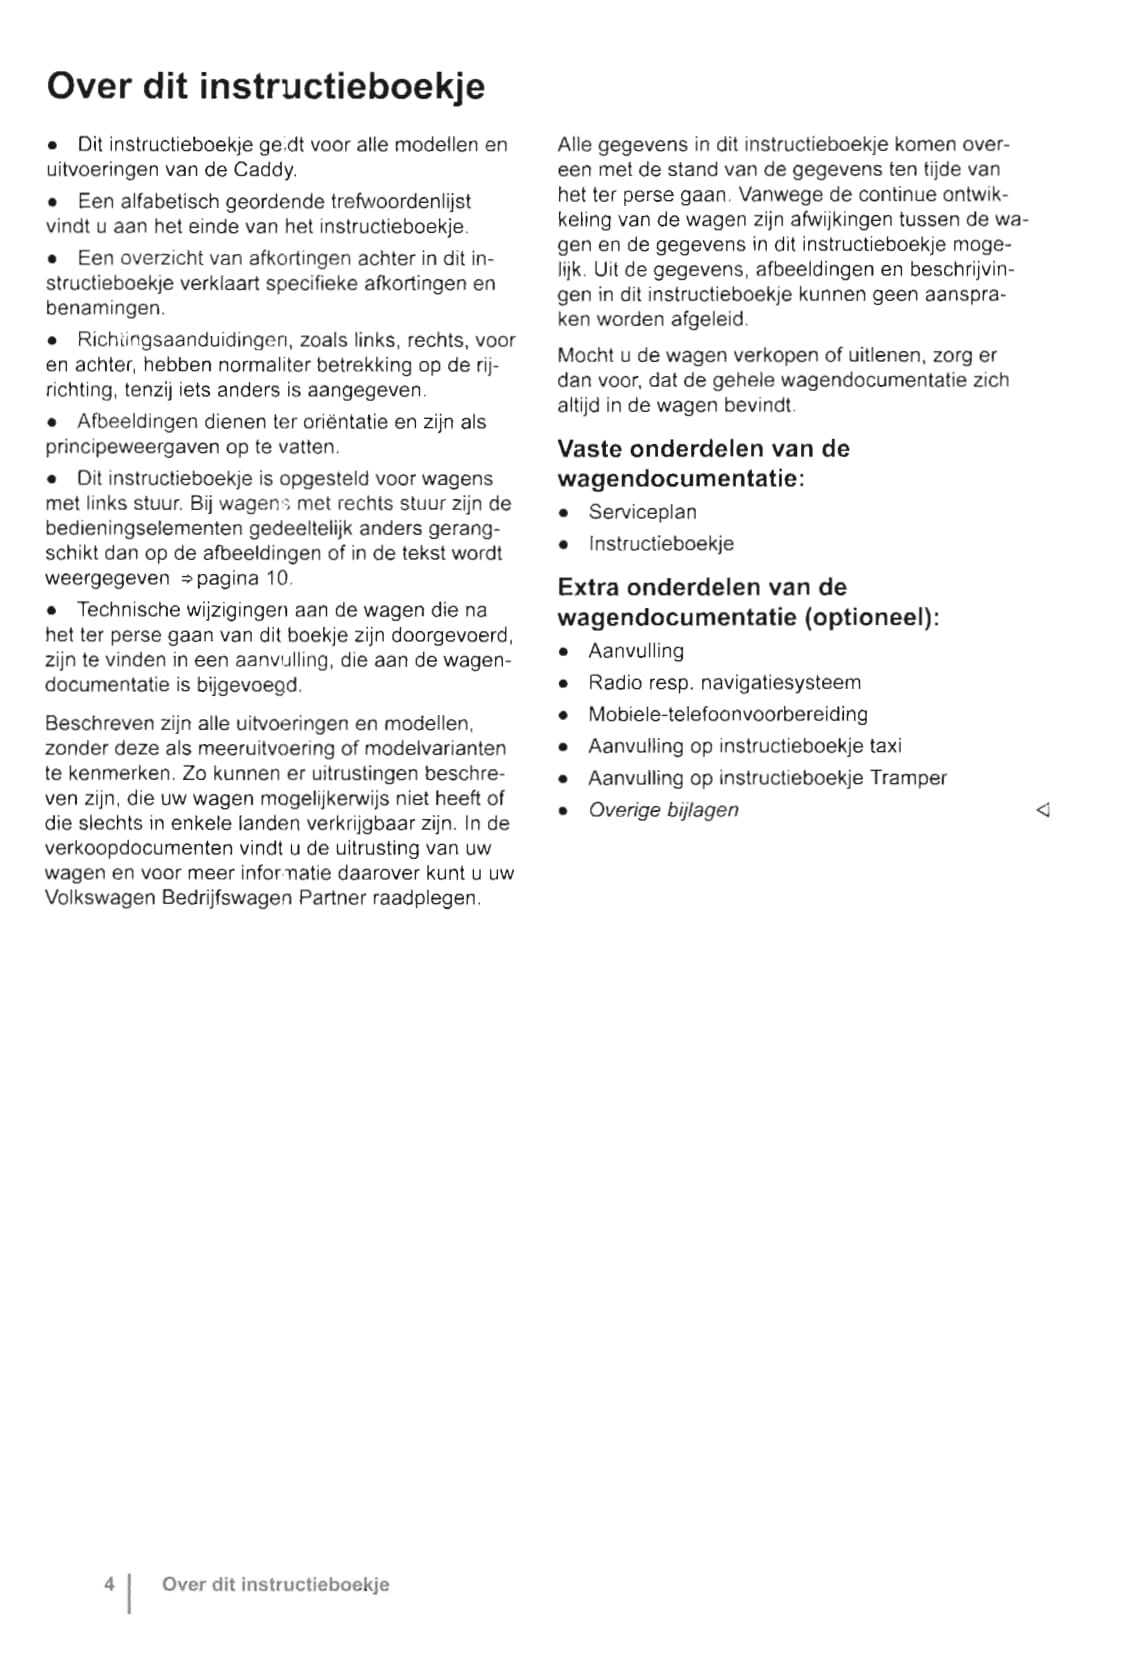 2010-2015 Volkswagen Caddy Gebruikershandleiding | Nederlands